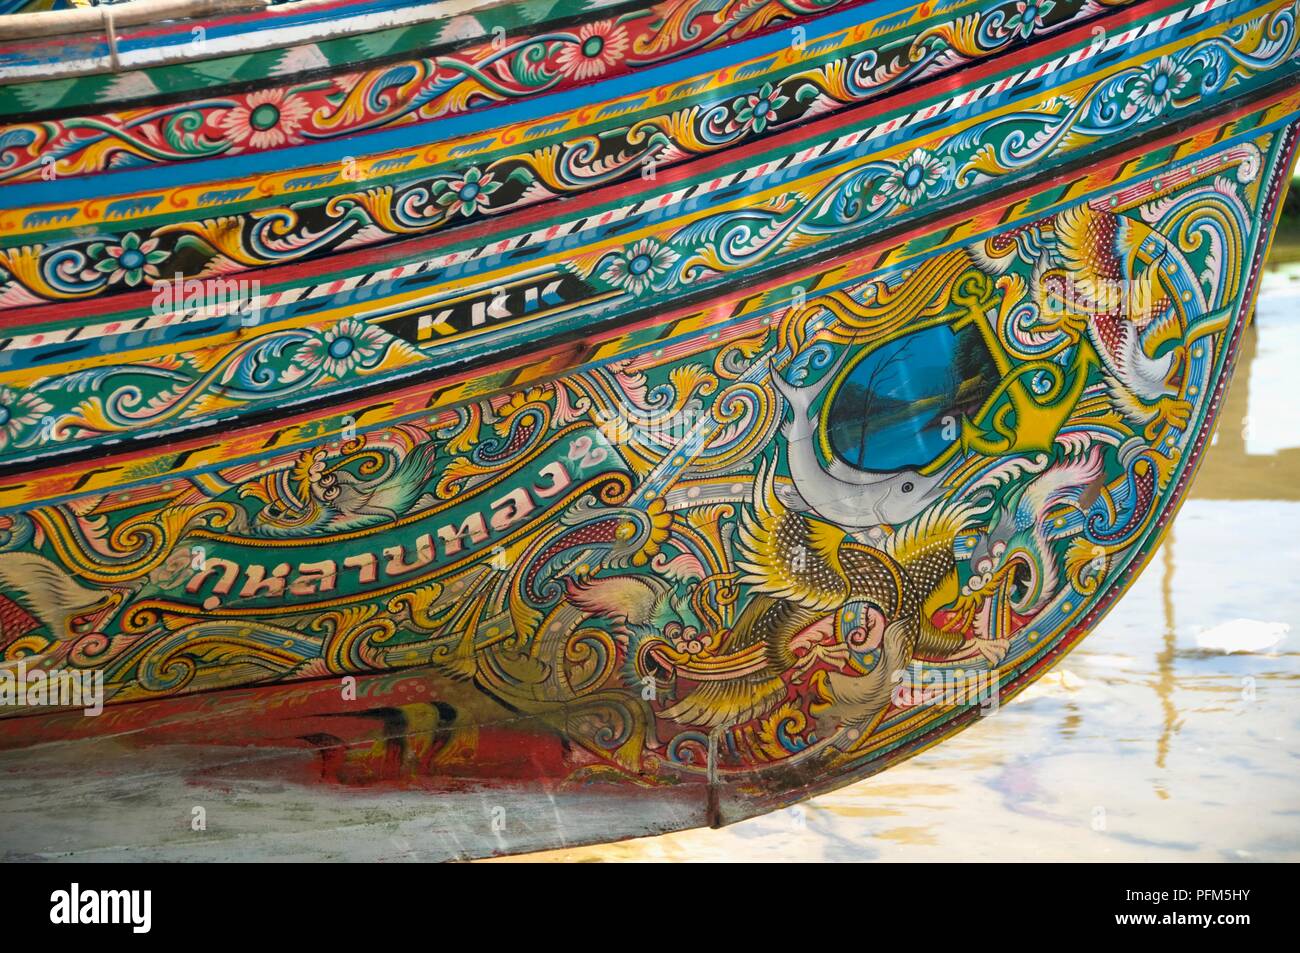 La Thaïlande, Saiburi, peint sur l'extérieur d'un bateau kolae, close-up Banque D'Images